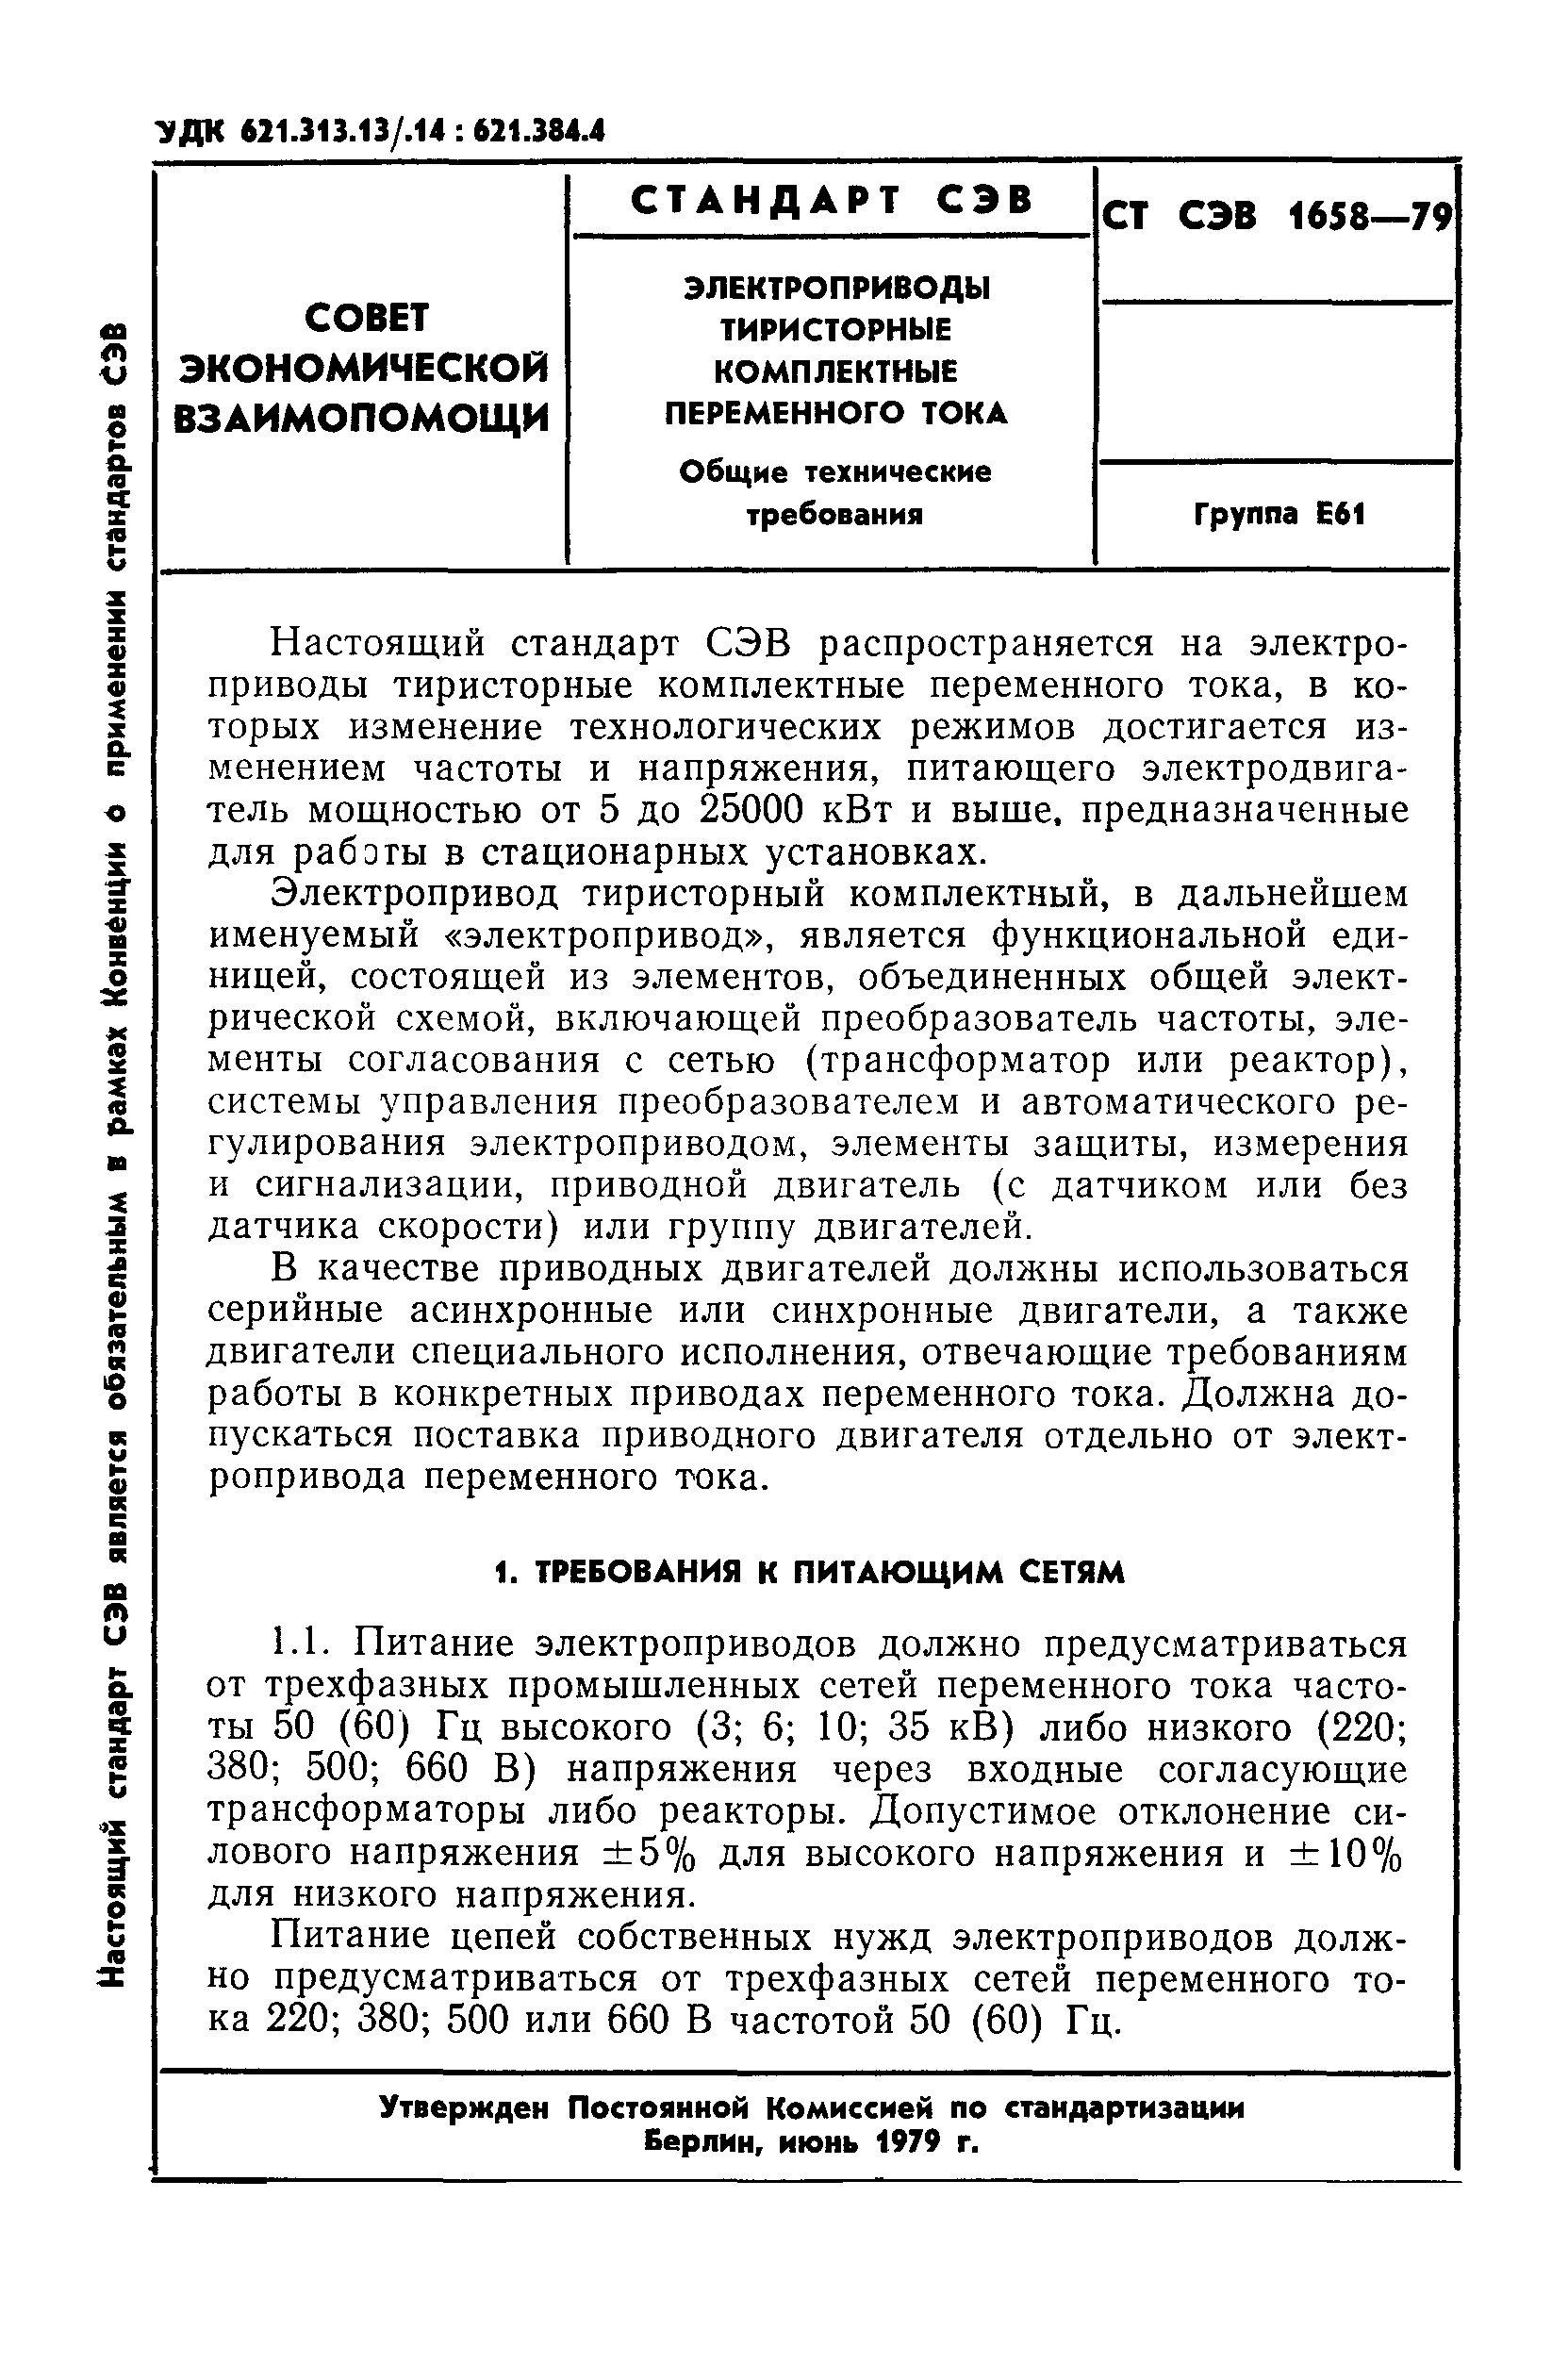 СТ СЭВ 1658-79